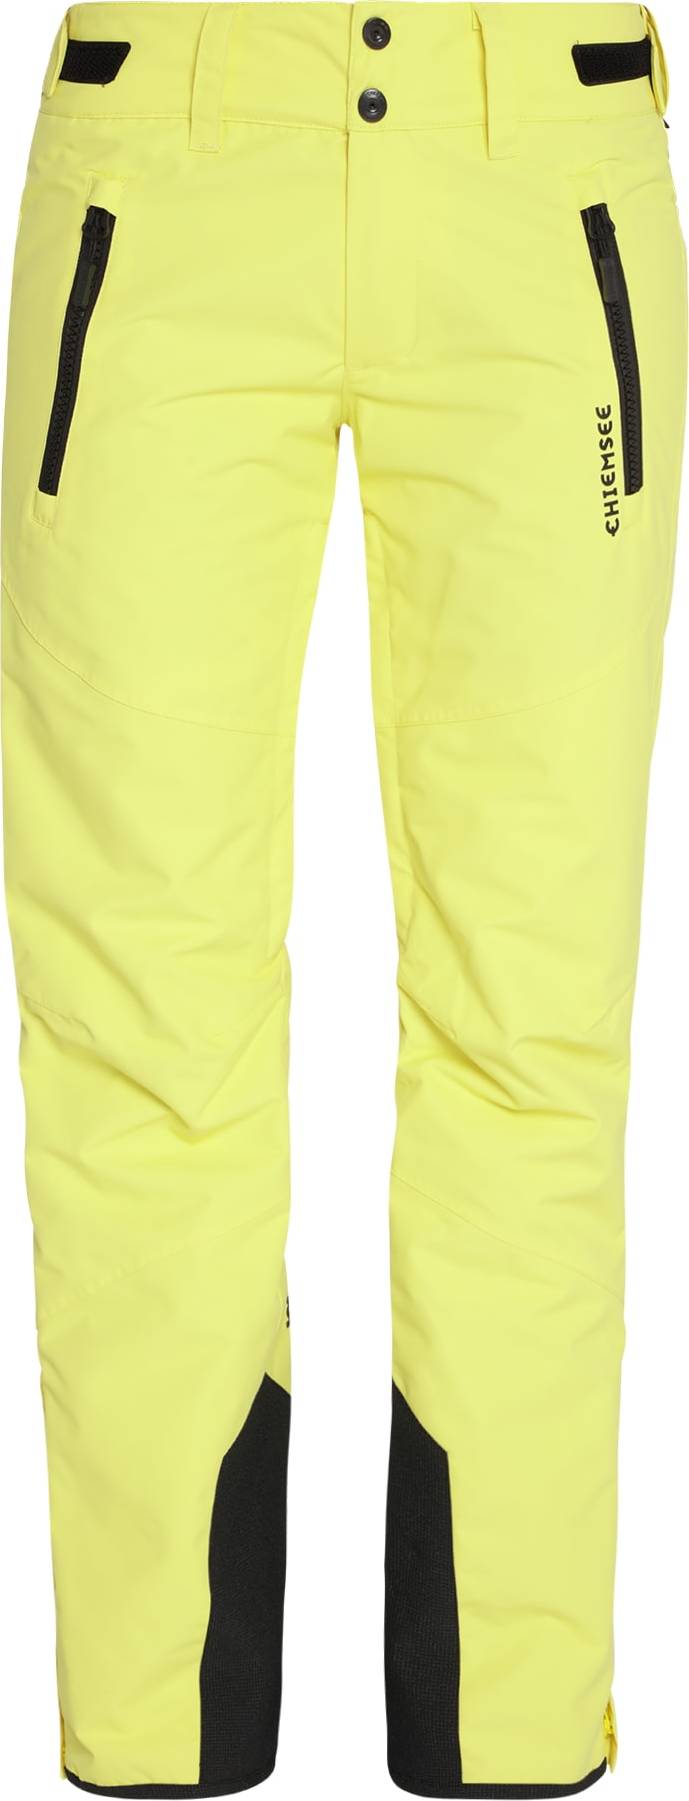 CHIEMSEE Sportovní kalhoty žlutá